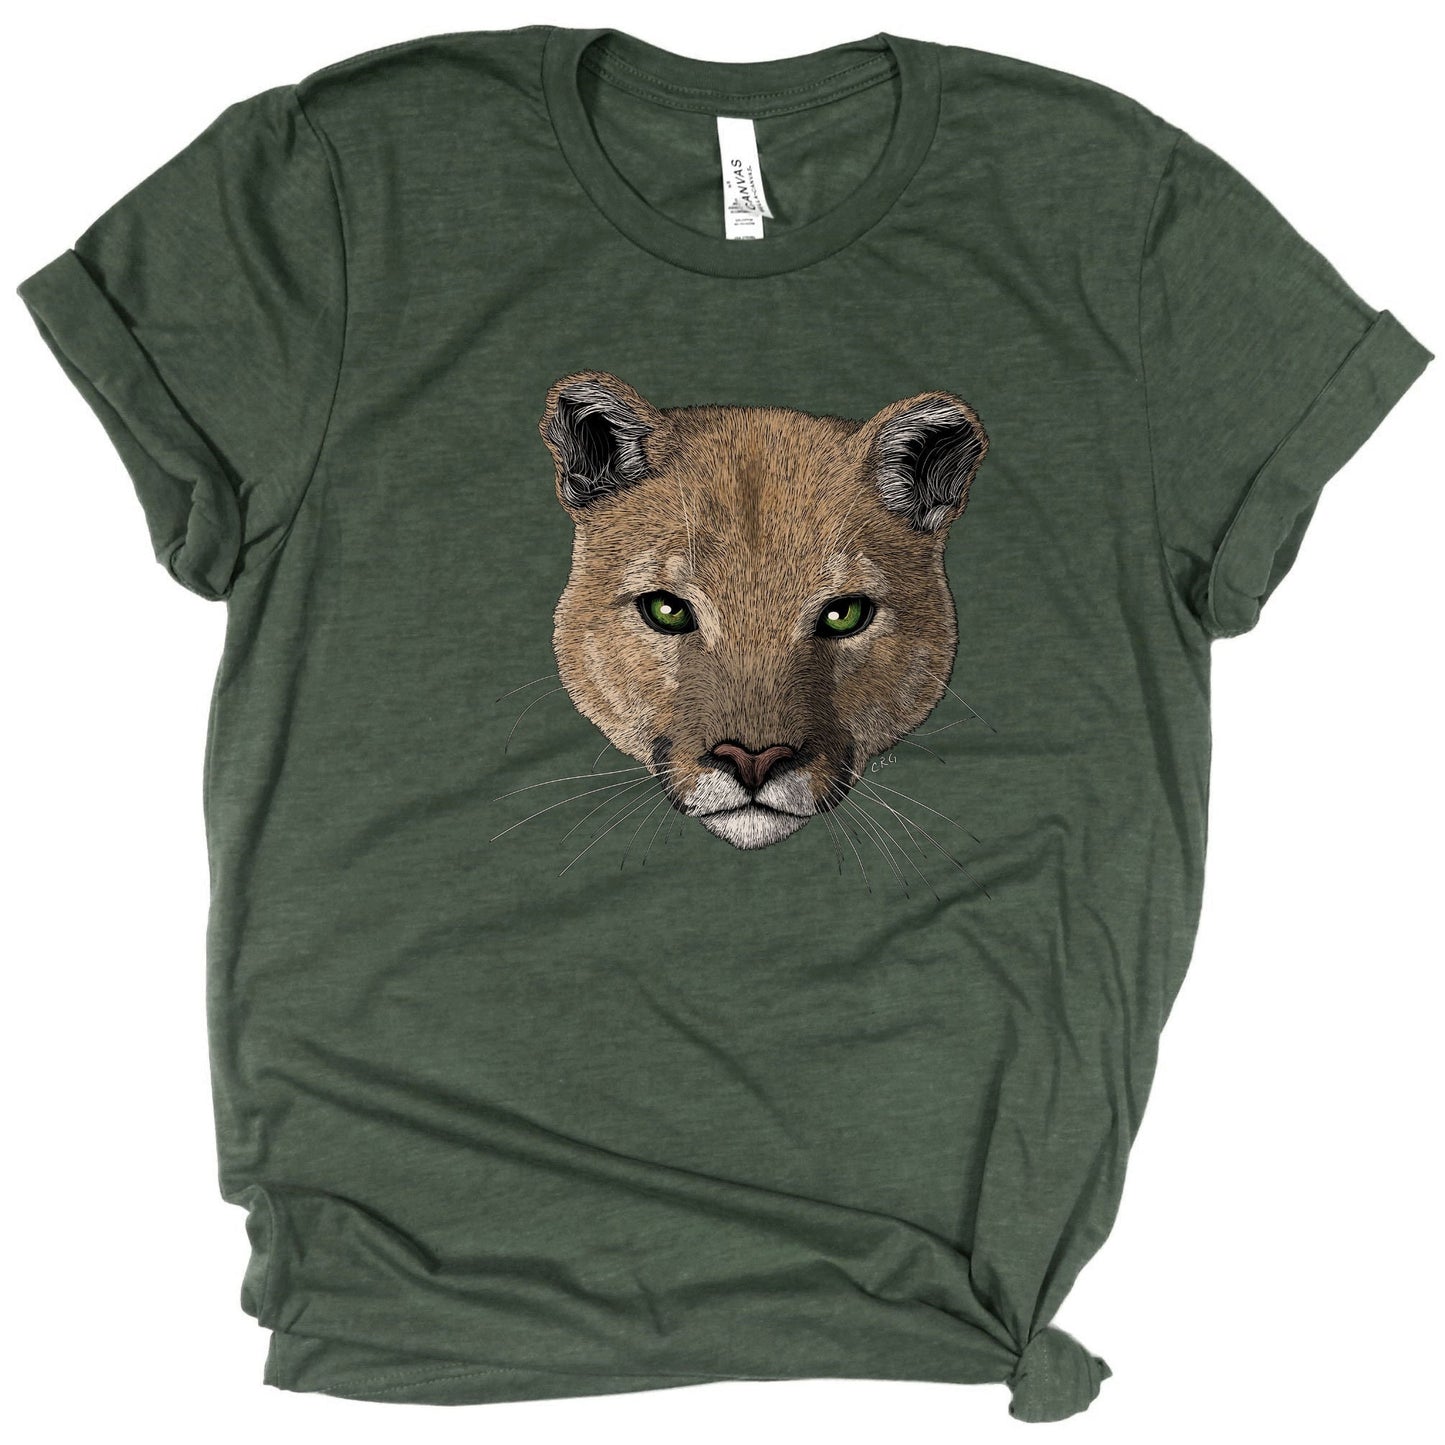 Puma Shirt